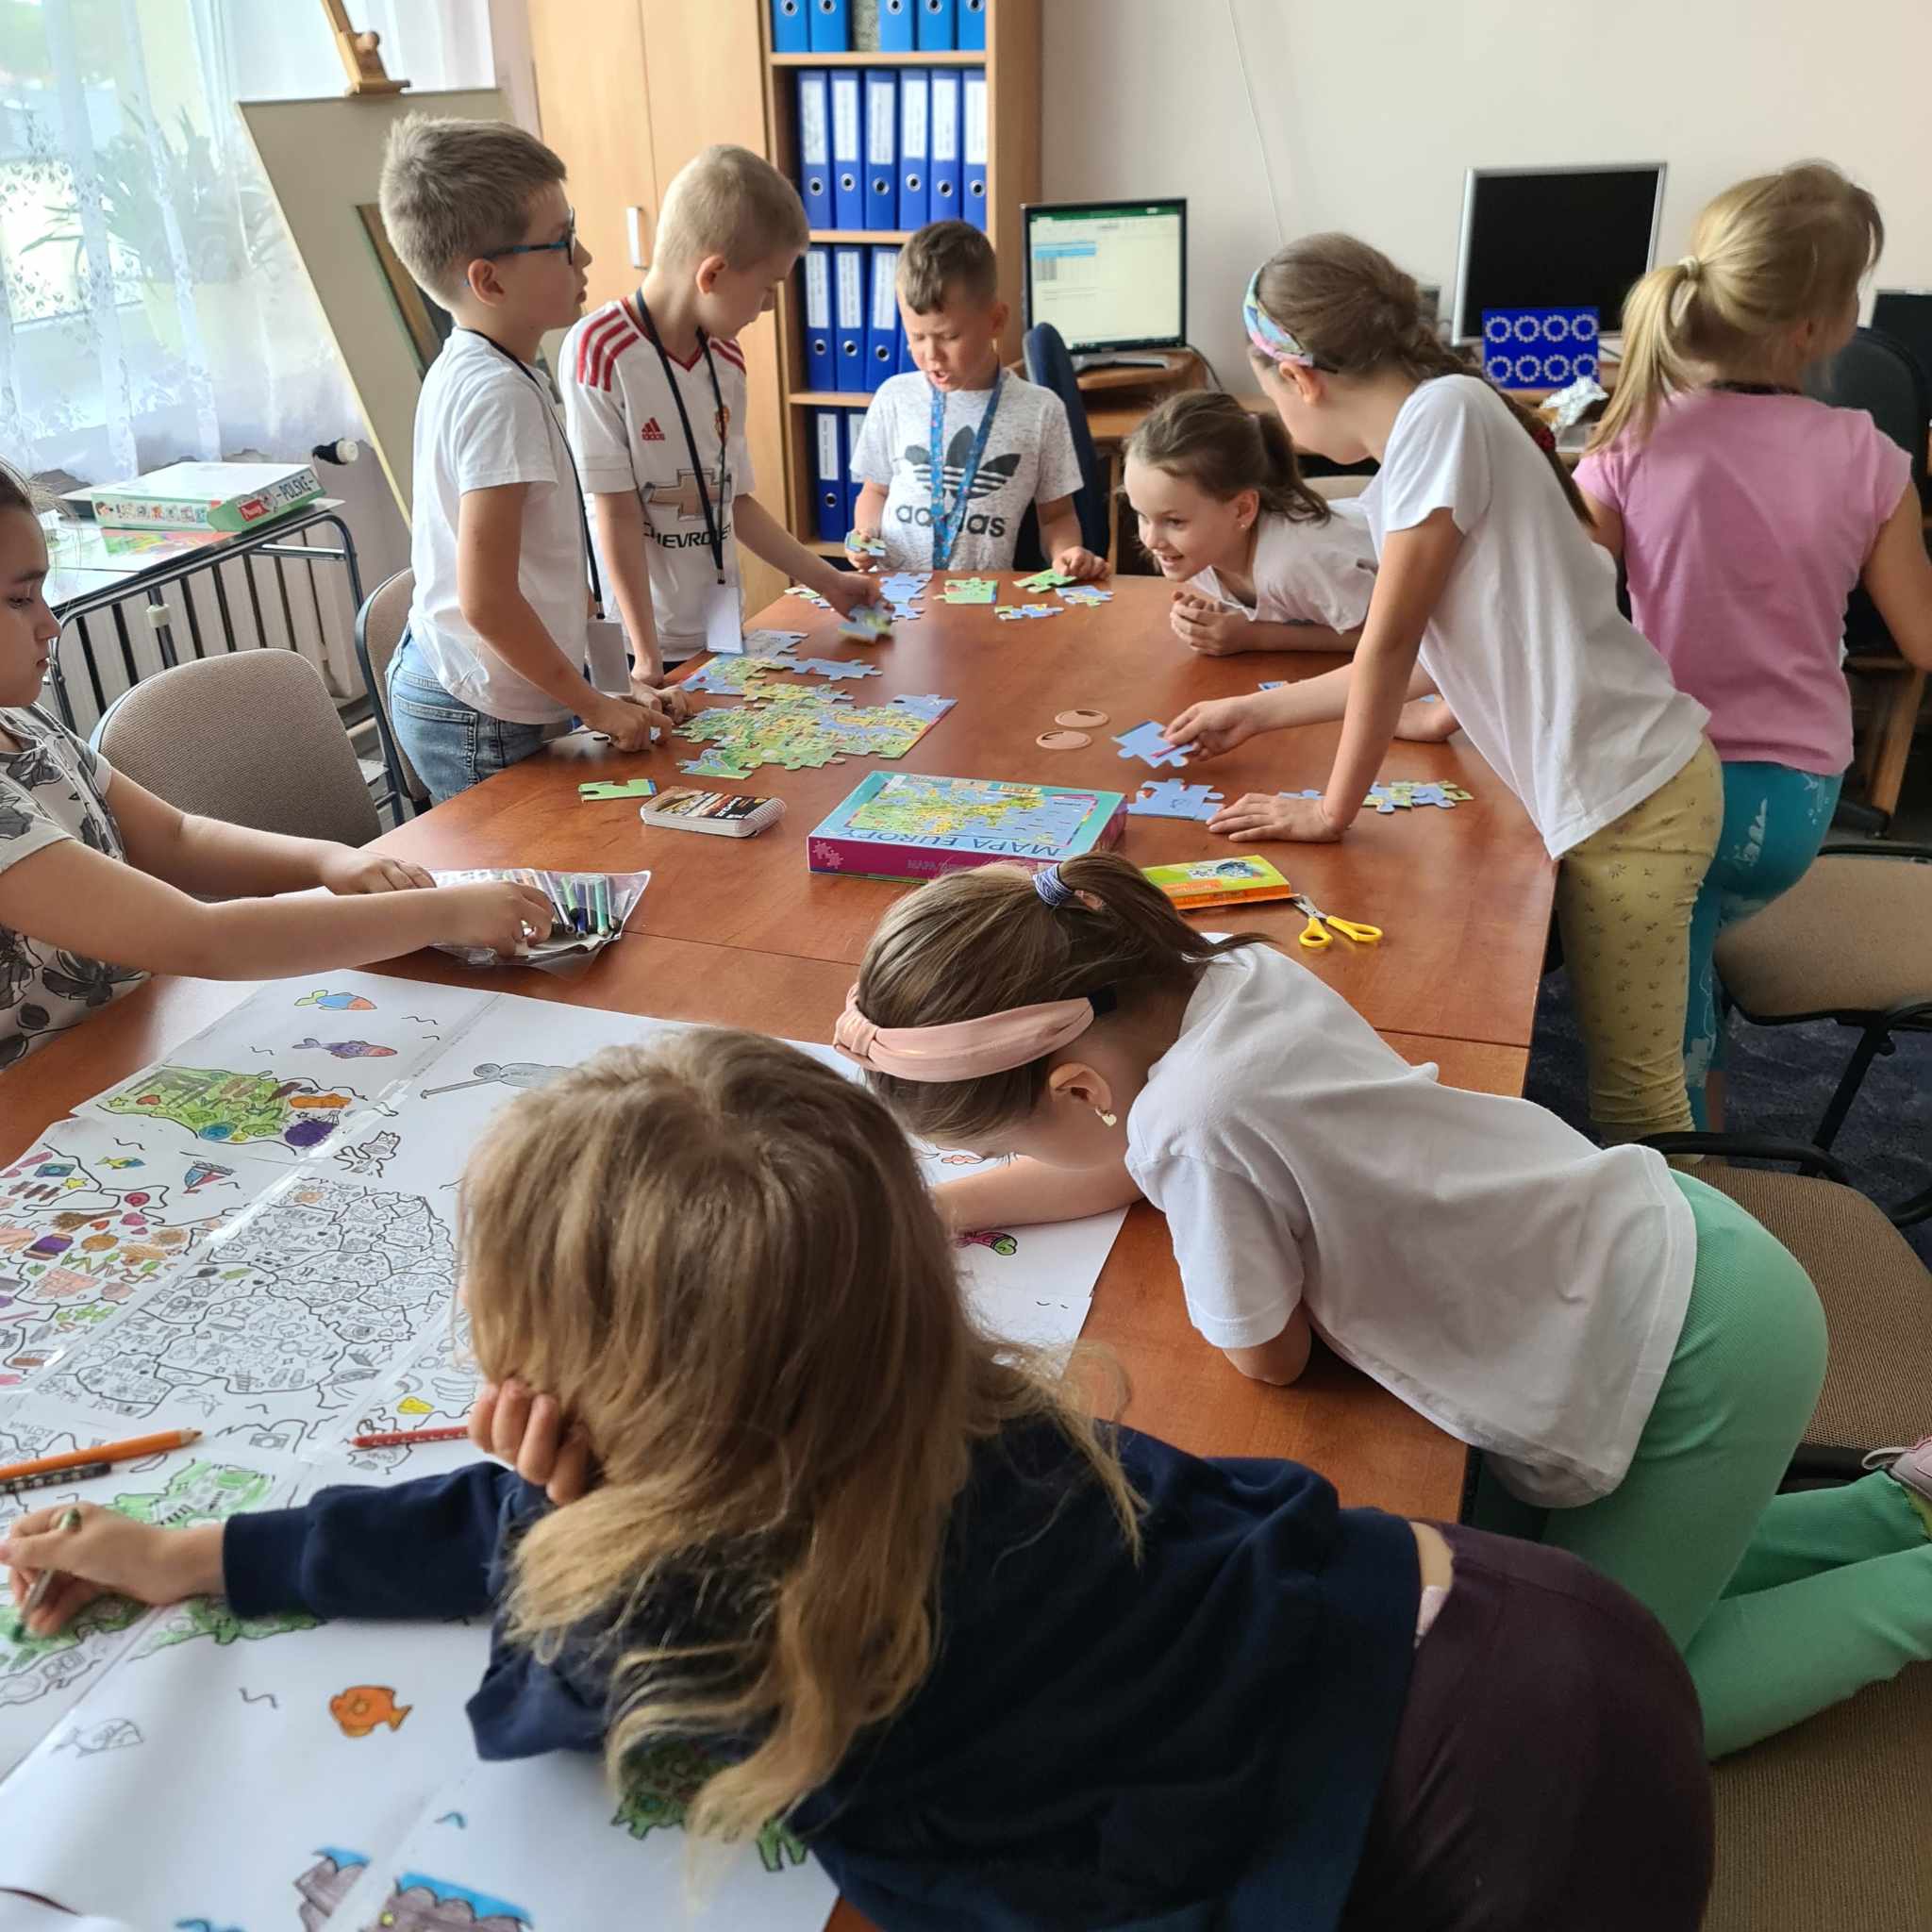 Uczniowie na każdej przerwie przychodzili kolorować mapę Europy, układać puzzle z krajami Unii Europejskiej oraz rozwiązywali zagadki i quizy dotyczące Unii.